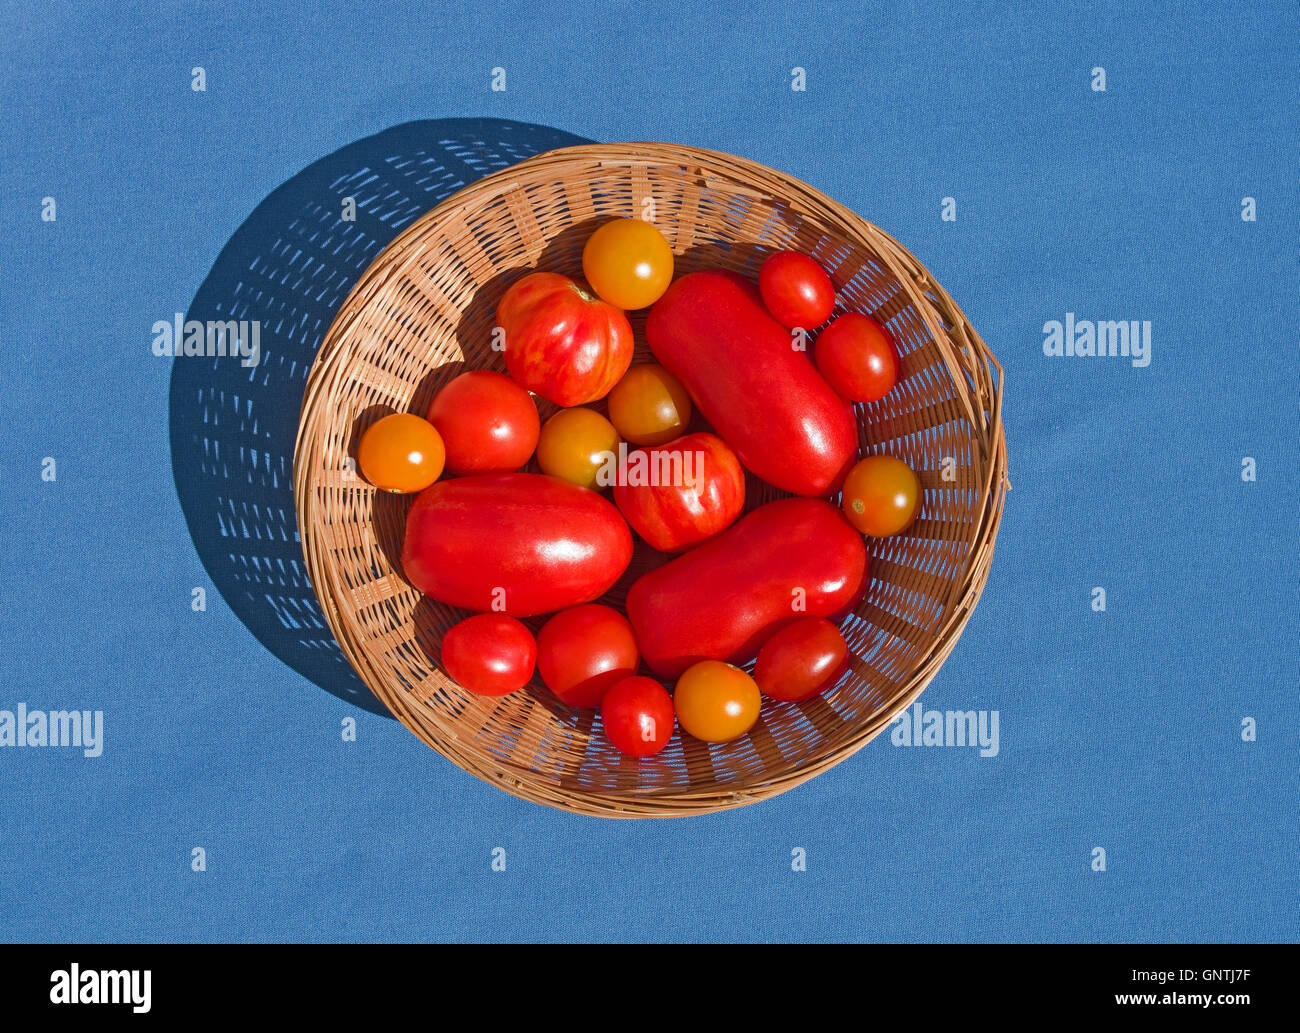 Rund geflochtenen Korb auf blauem Hintergrund, enthält mehrere verschiedene Sorten von rot und Orange zu Hause gewachsen Tomaten, England UK Stockfoto